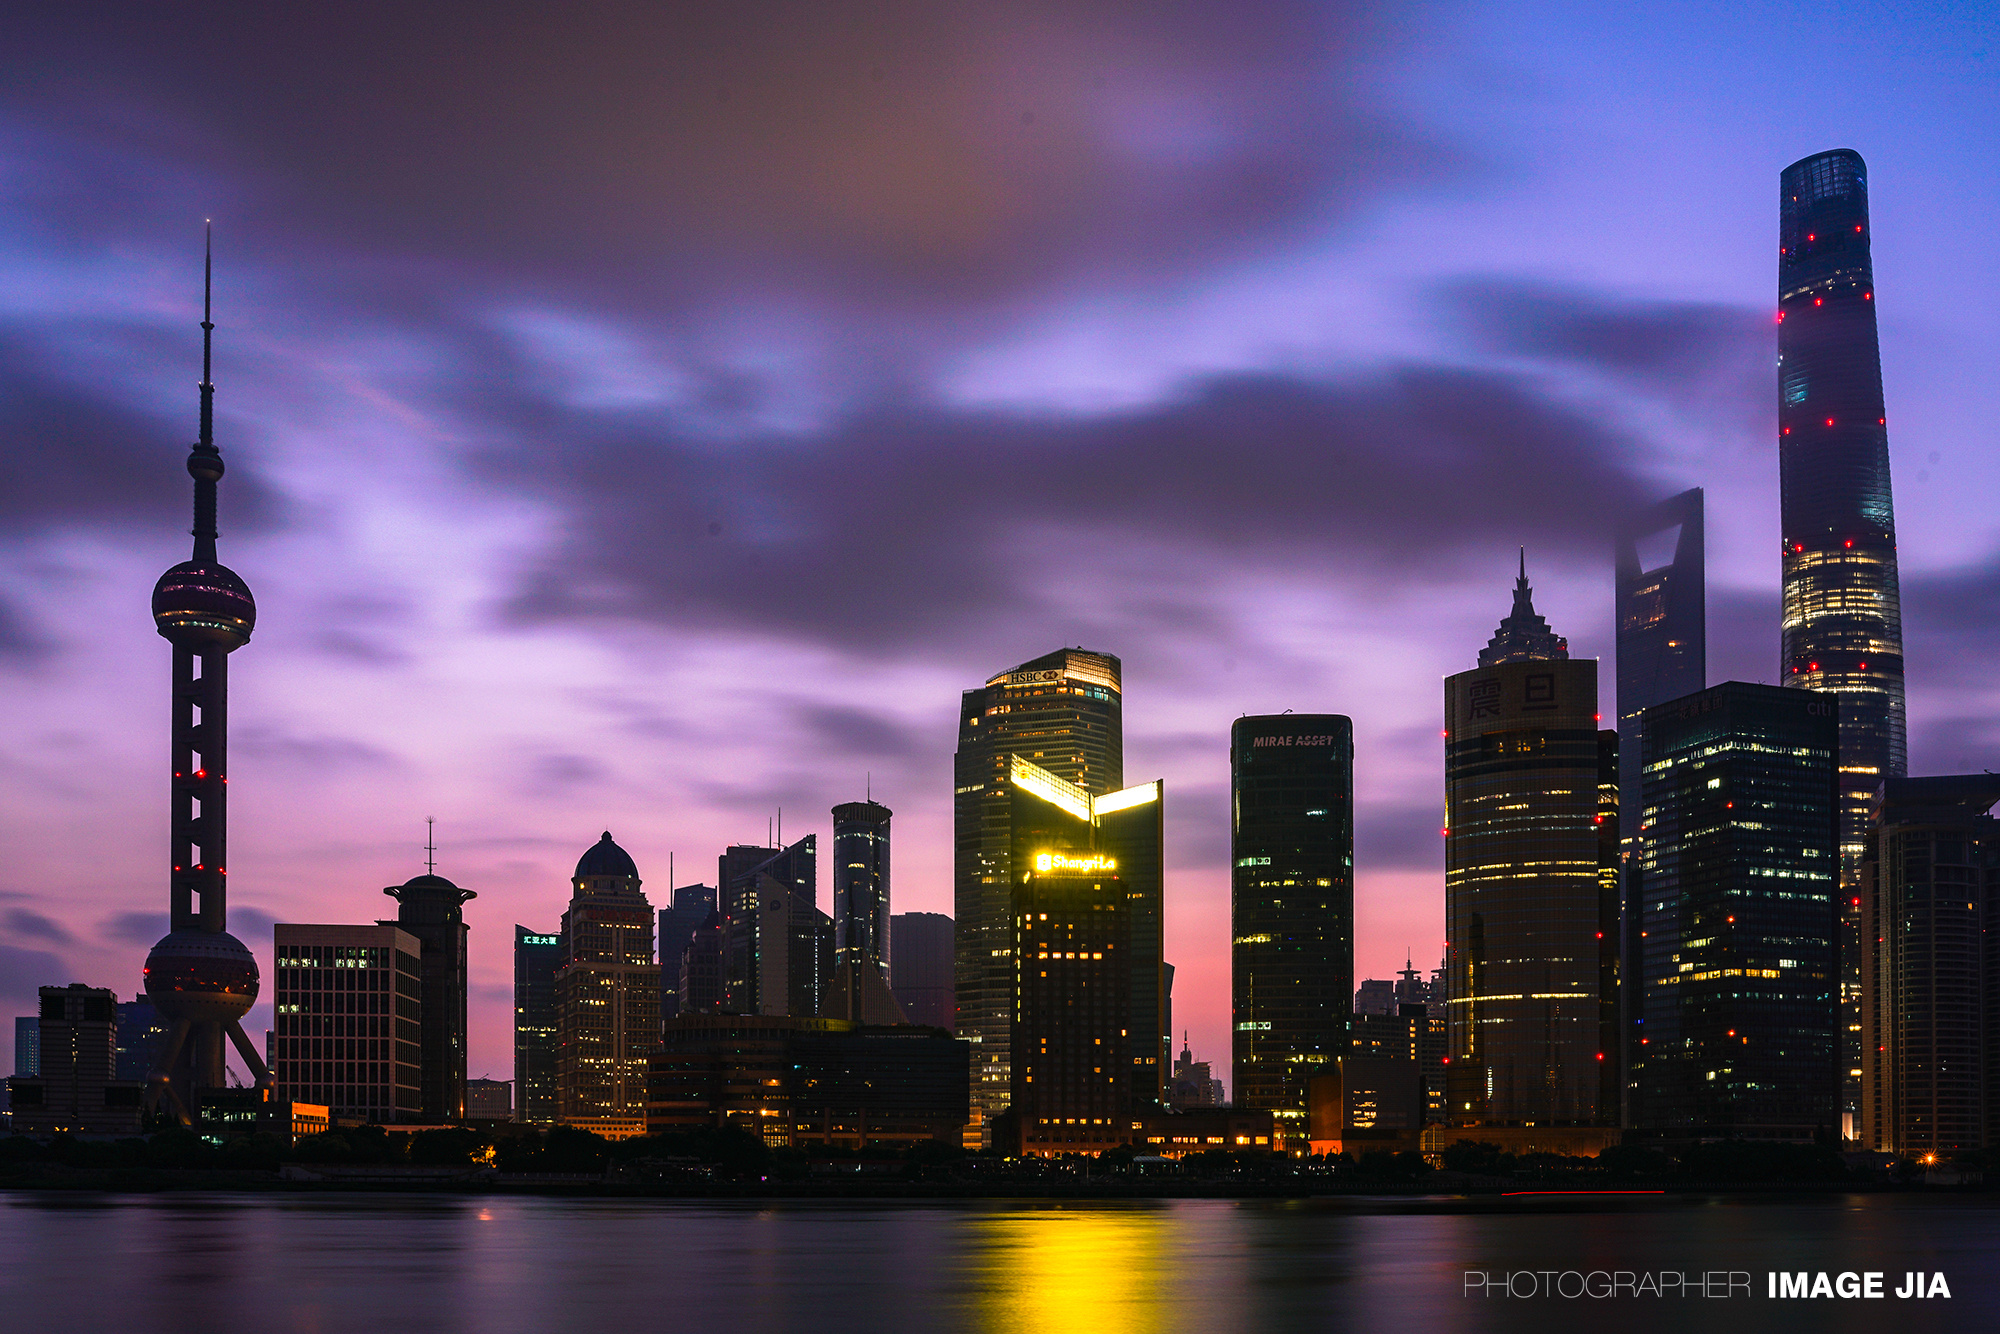 上海外滩夜色繁华 浦江两岸城市风景迷人